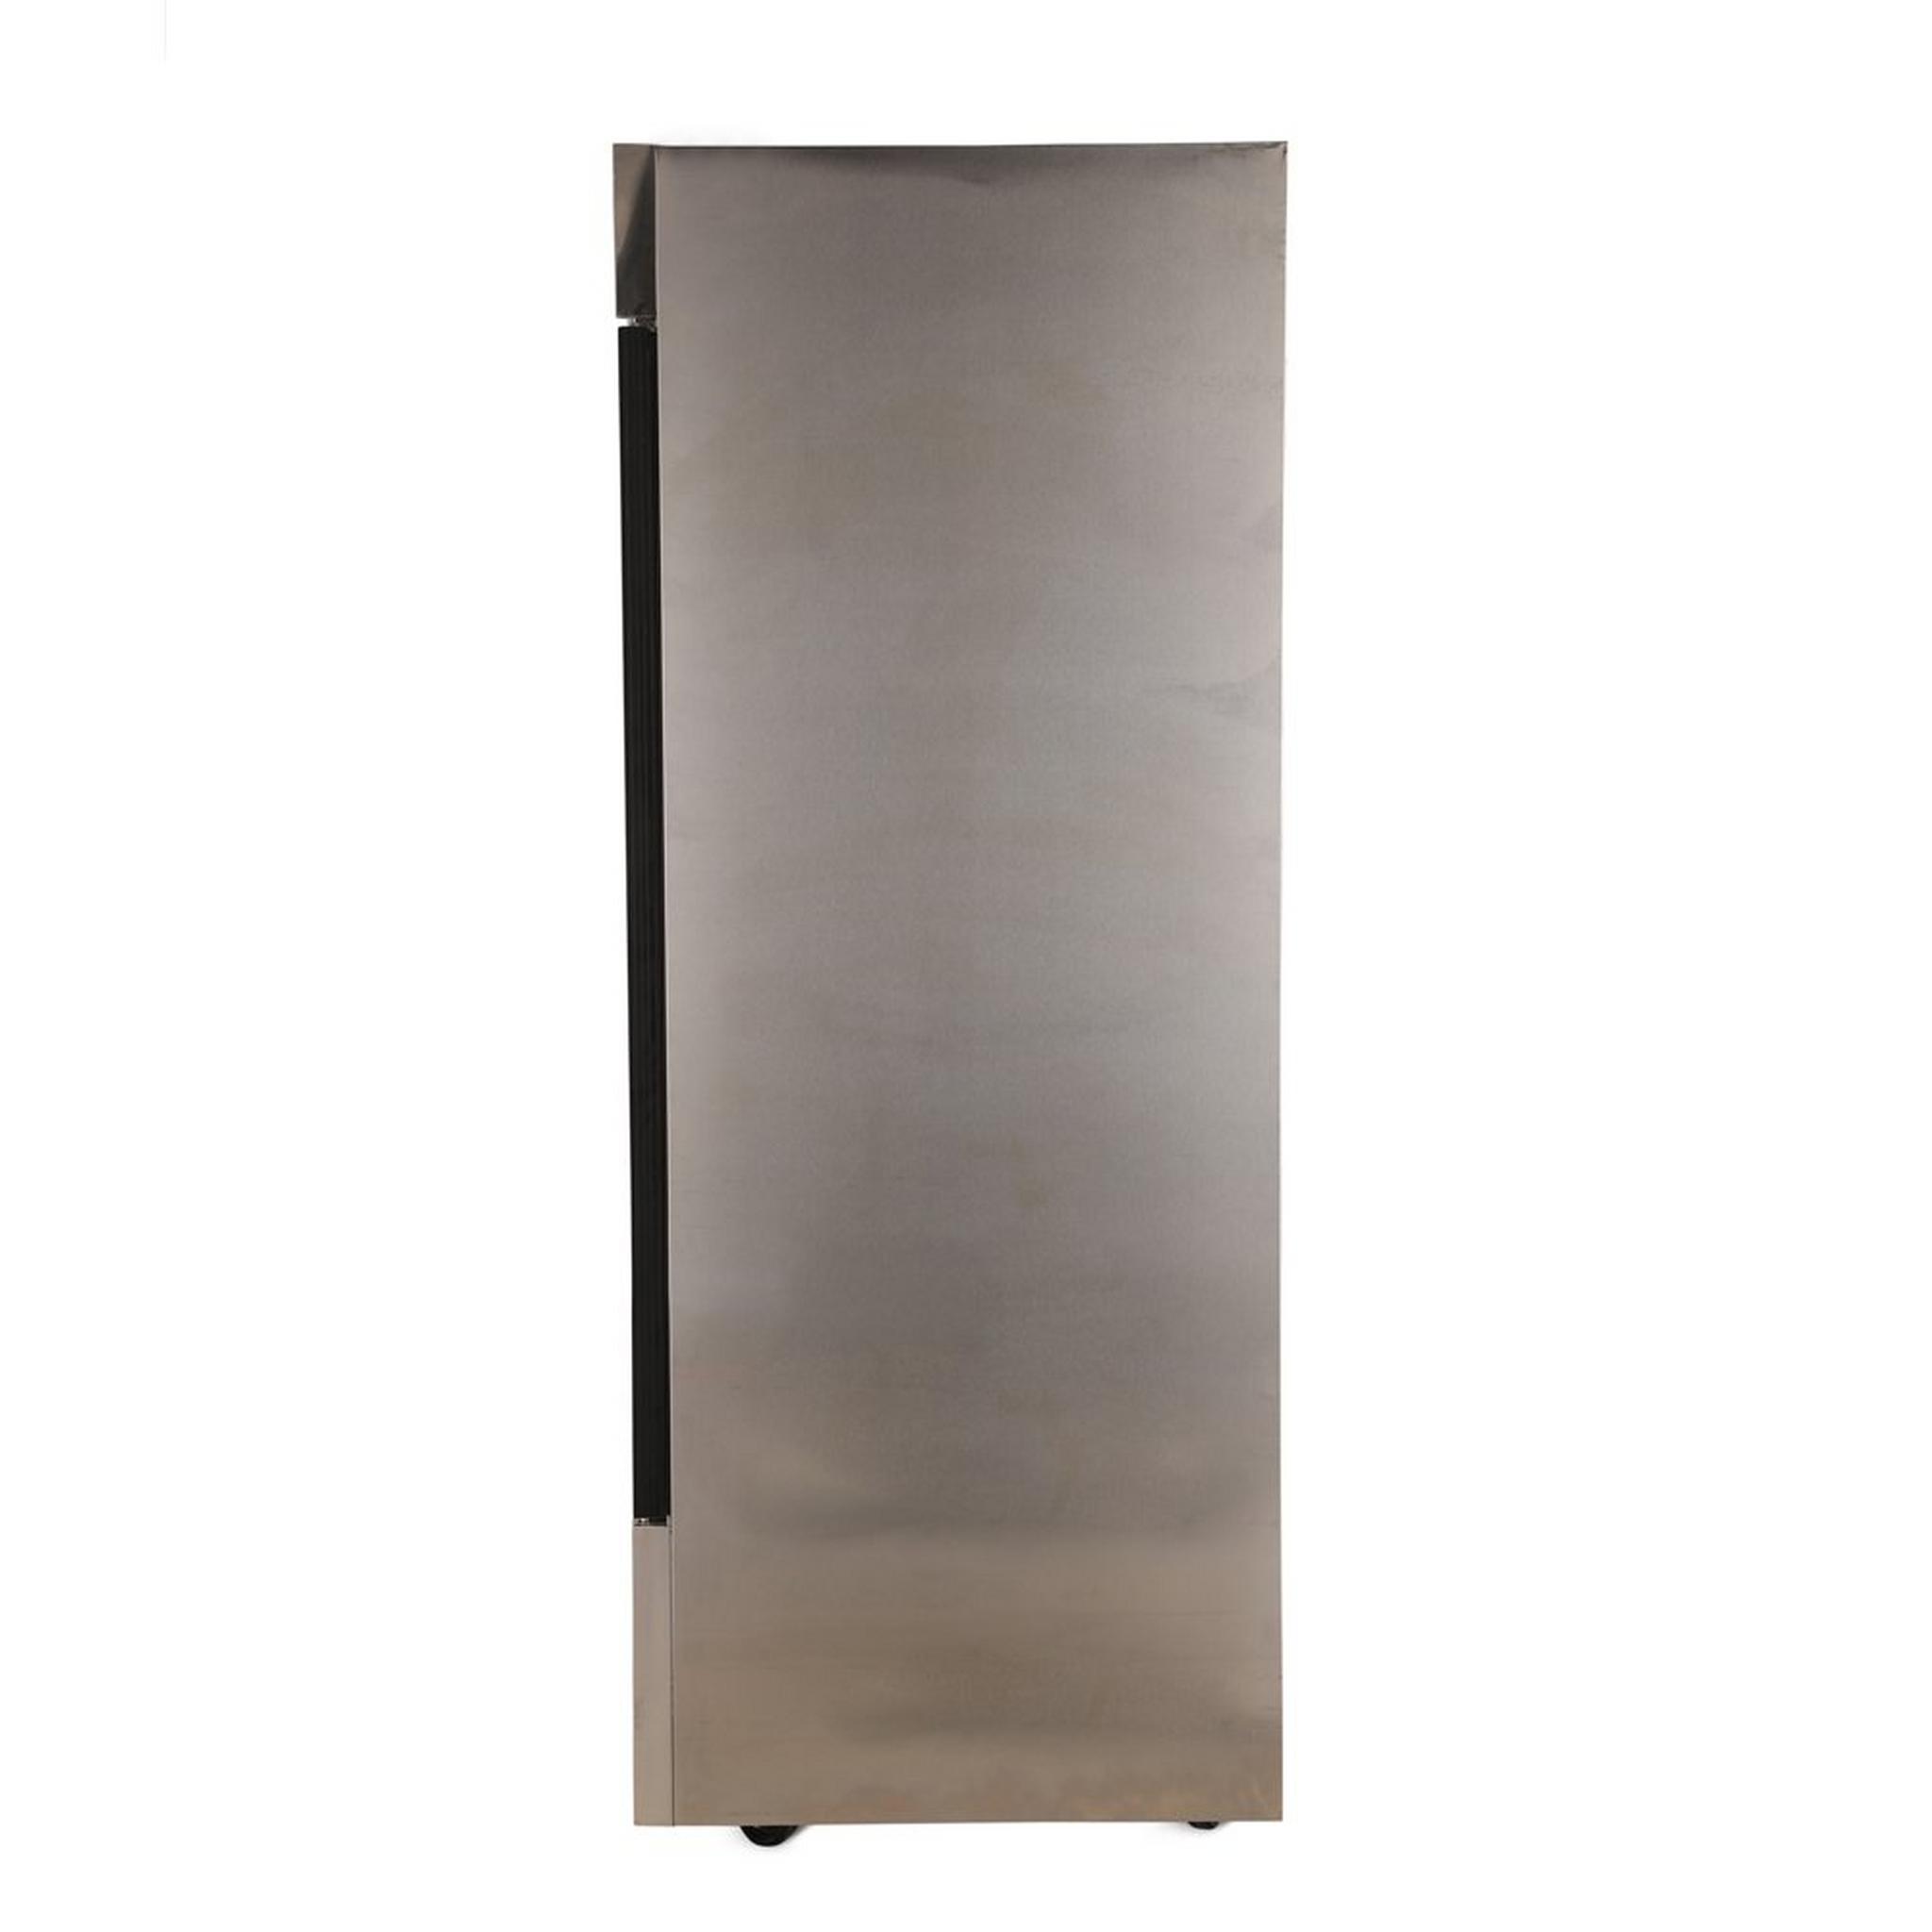 ثلاجة بباب شفاف من ونسا، 24 قدم مكعب، 680 لتر، 1GDS -ستانلس ستيل